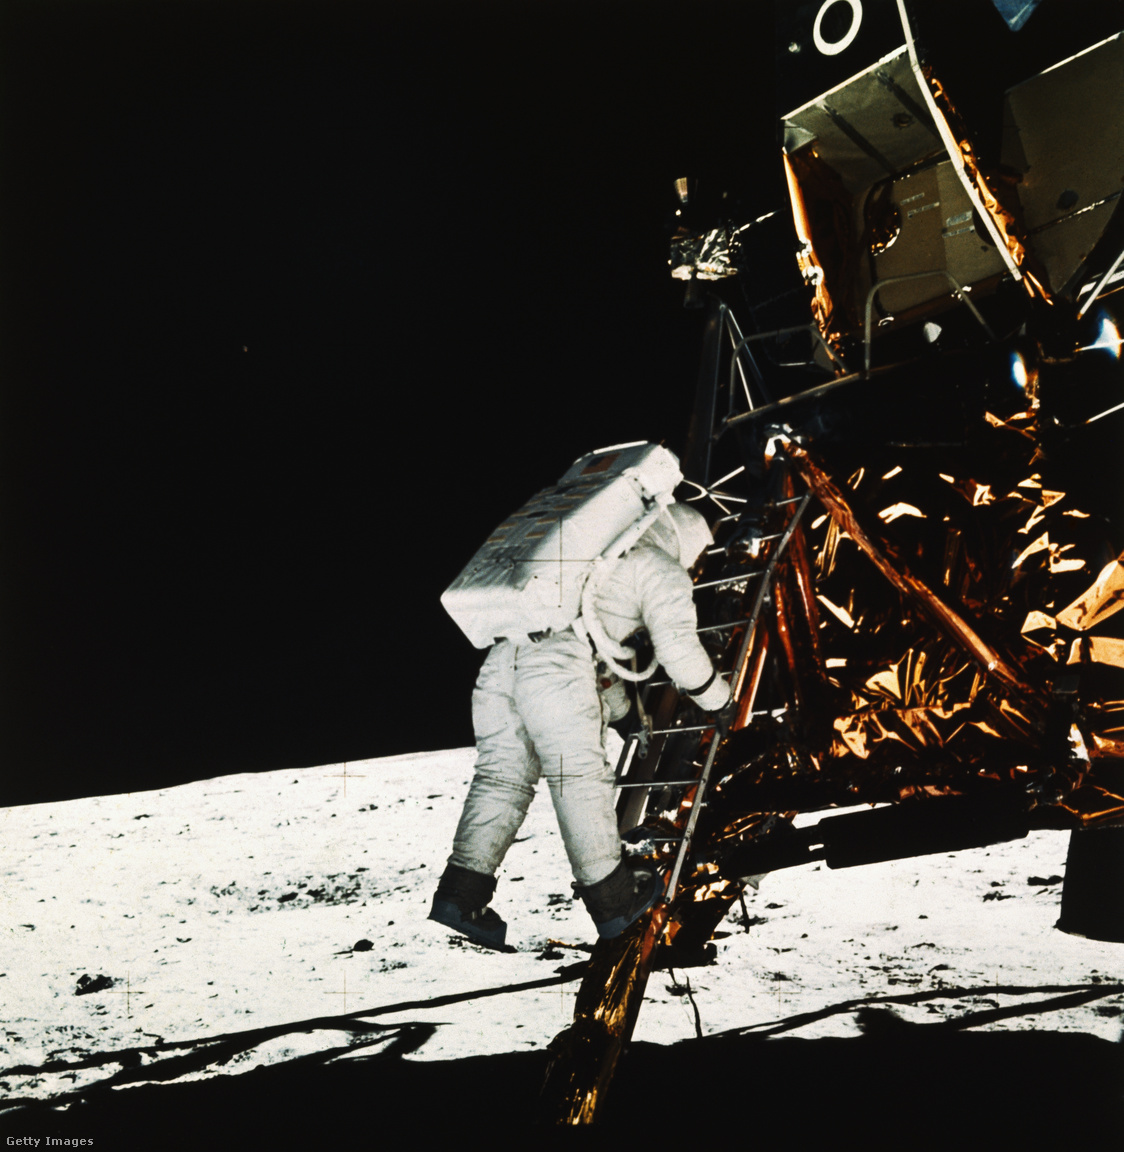 Az Apollo 11 Holdmodul pilótája, Buzz Aldrin ereszkedik le a Holdmodul létráján a Hold felszínére a Nyugalom bázison (Tranquility Base)